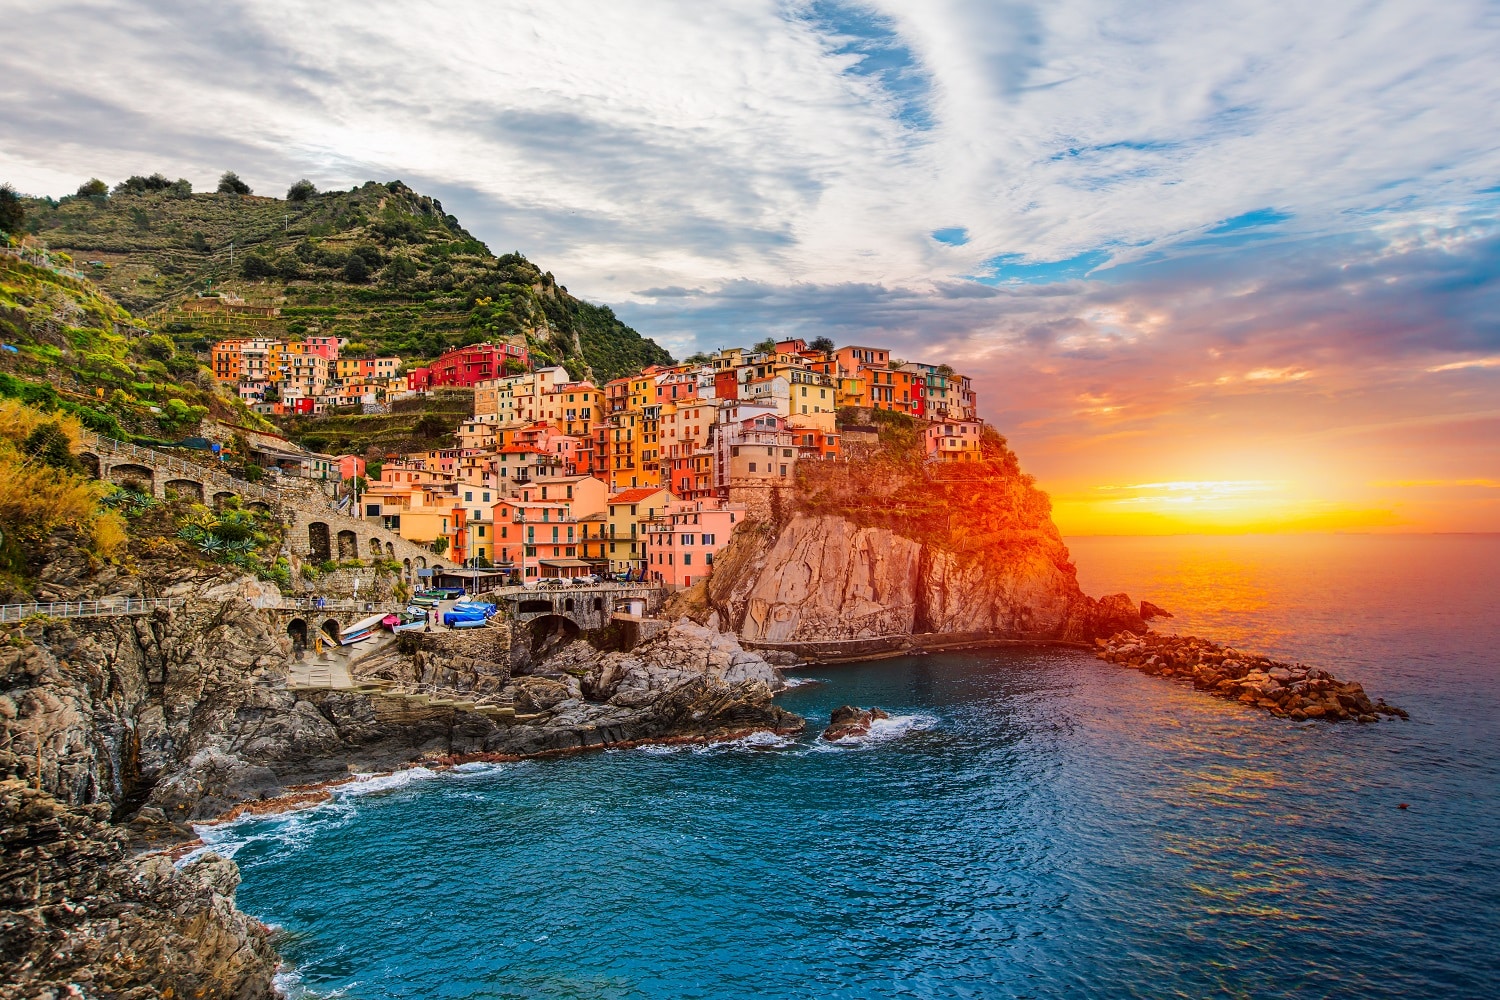 La vita e bella! Cinque restaurante pentru o vacanţă culinară în Cinque Terre